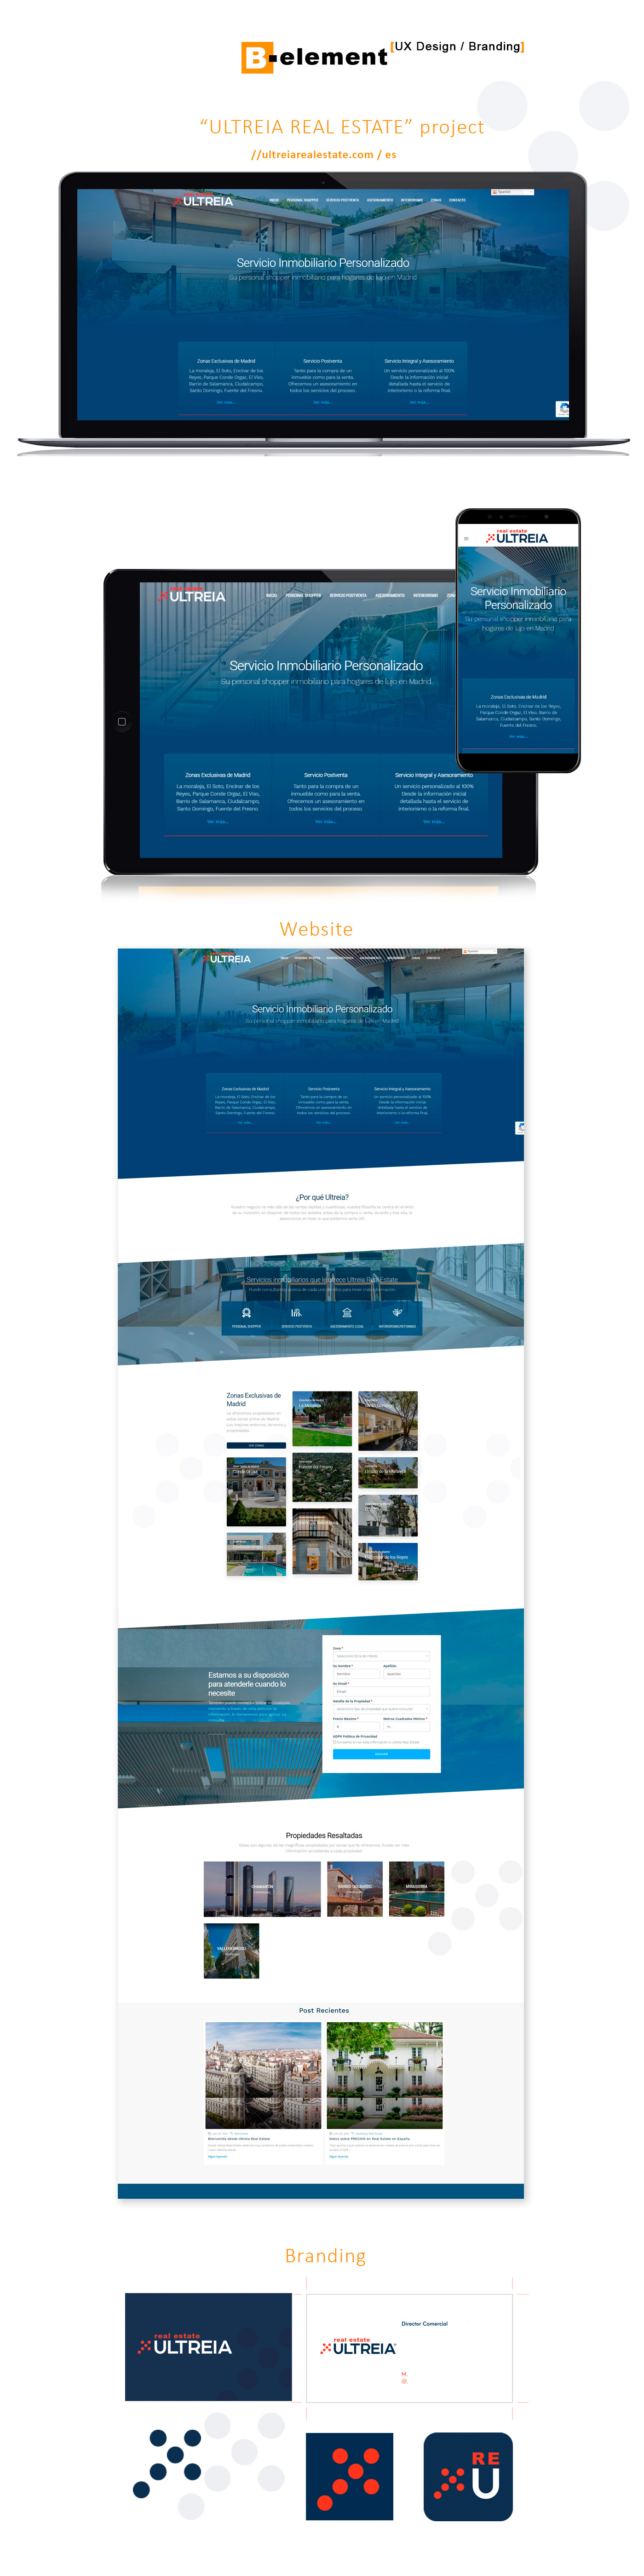 Diseño, Maquetación y Branding Website Ultreia Real Estate